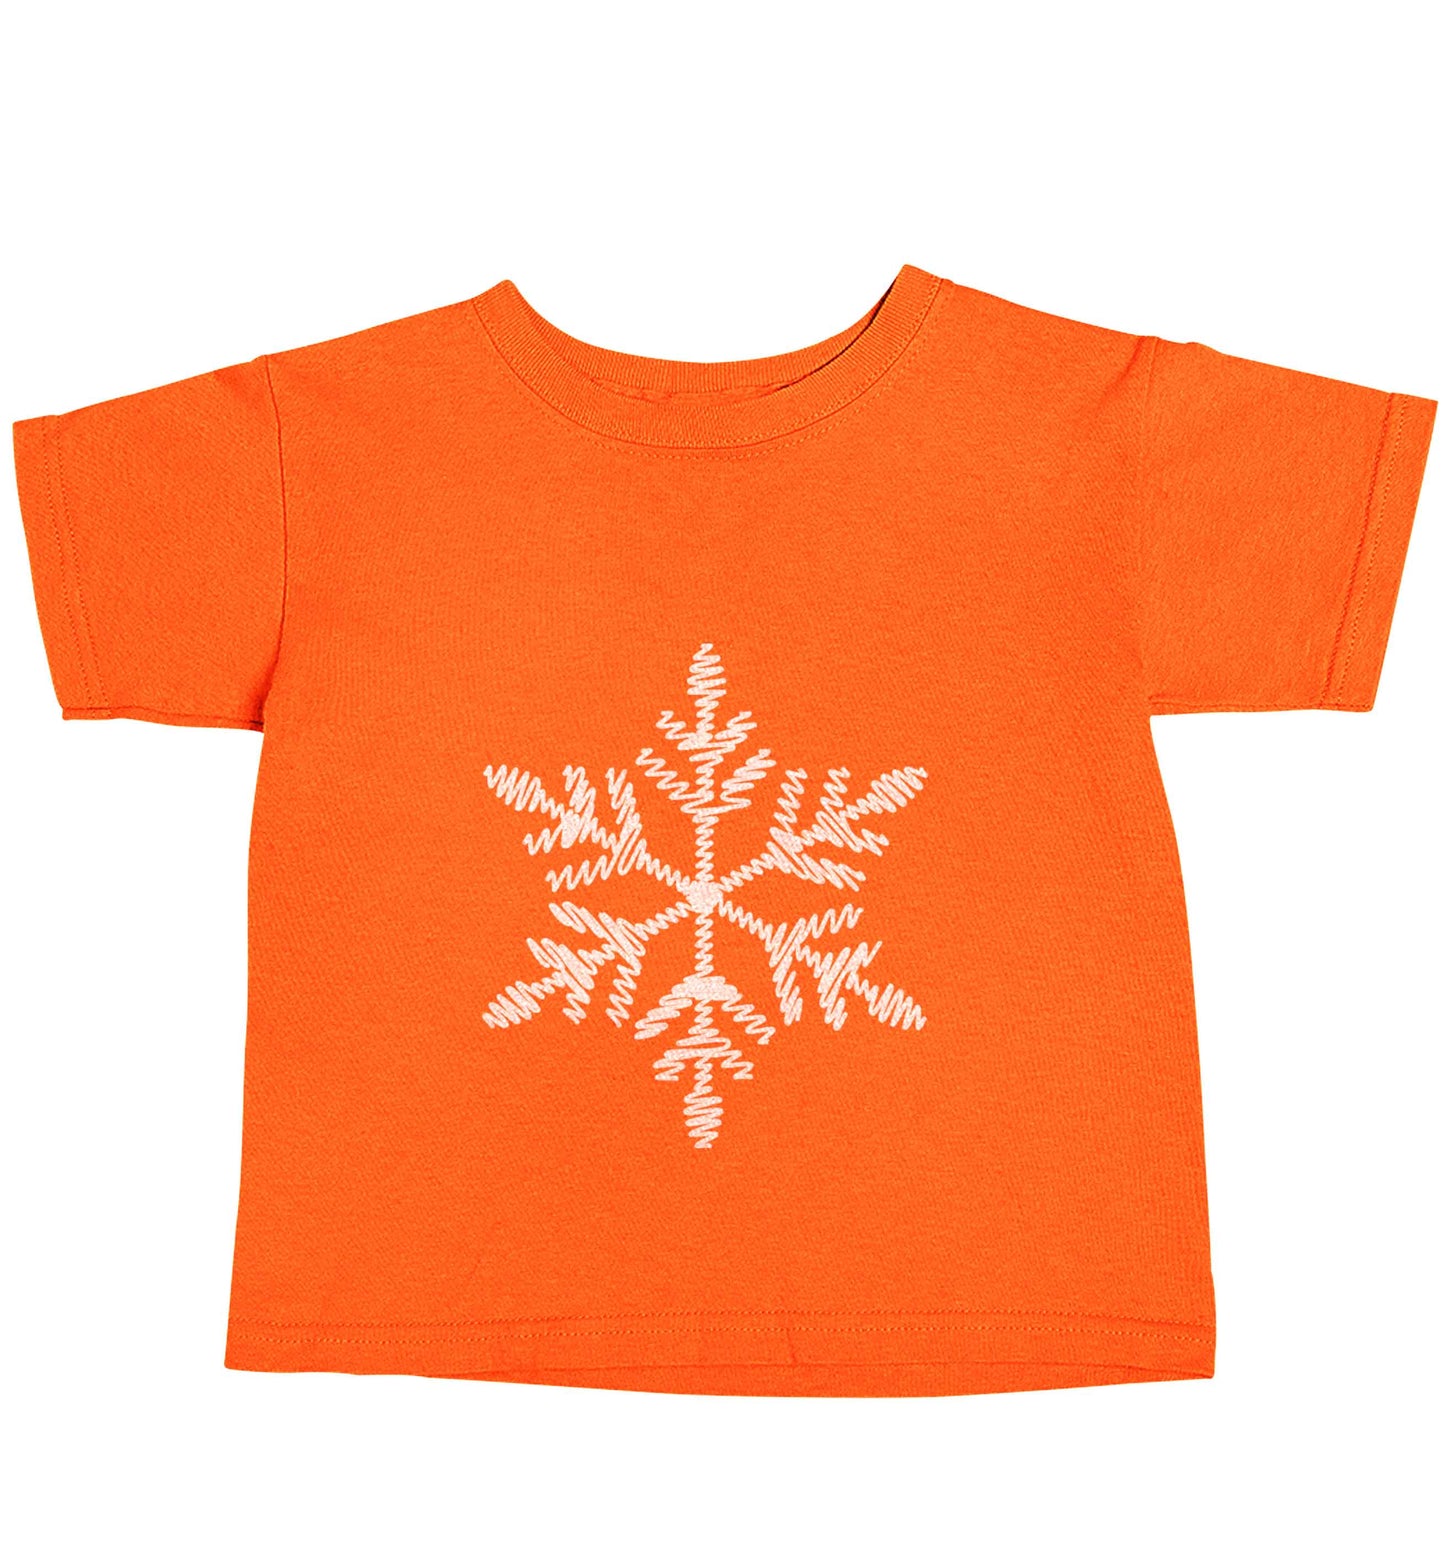 Snowflake orange baby toddler Tshirt 2 Years